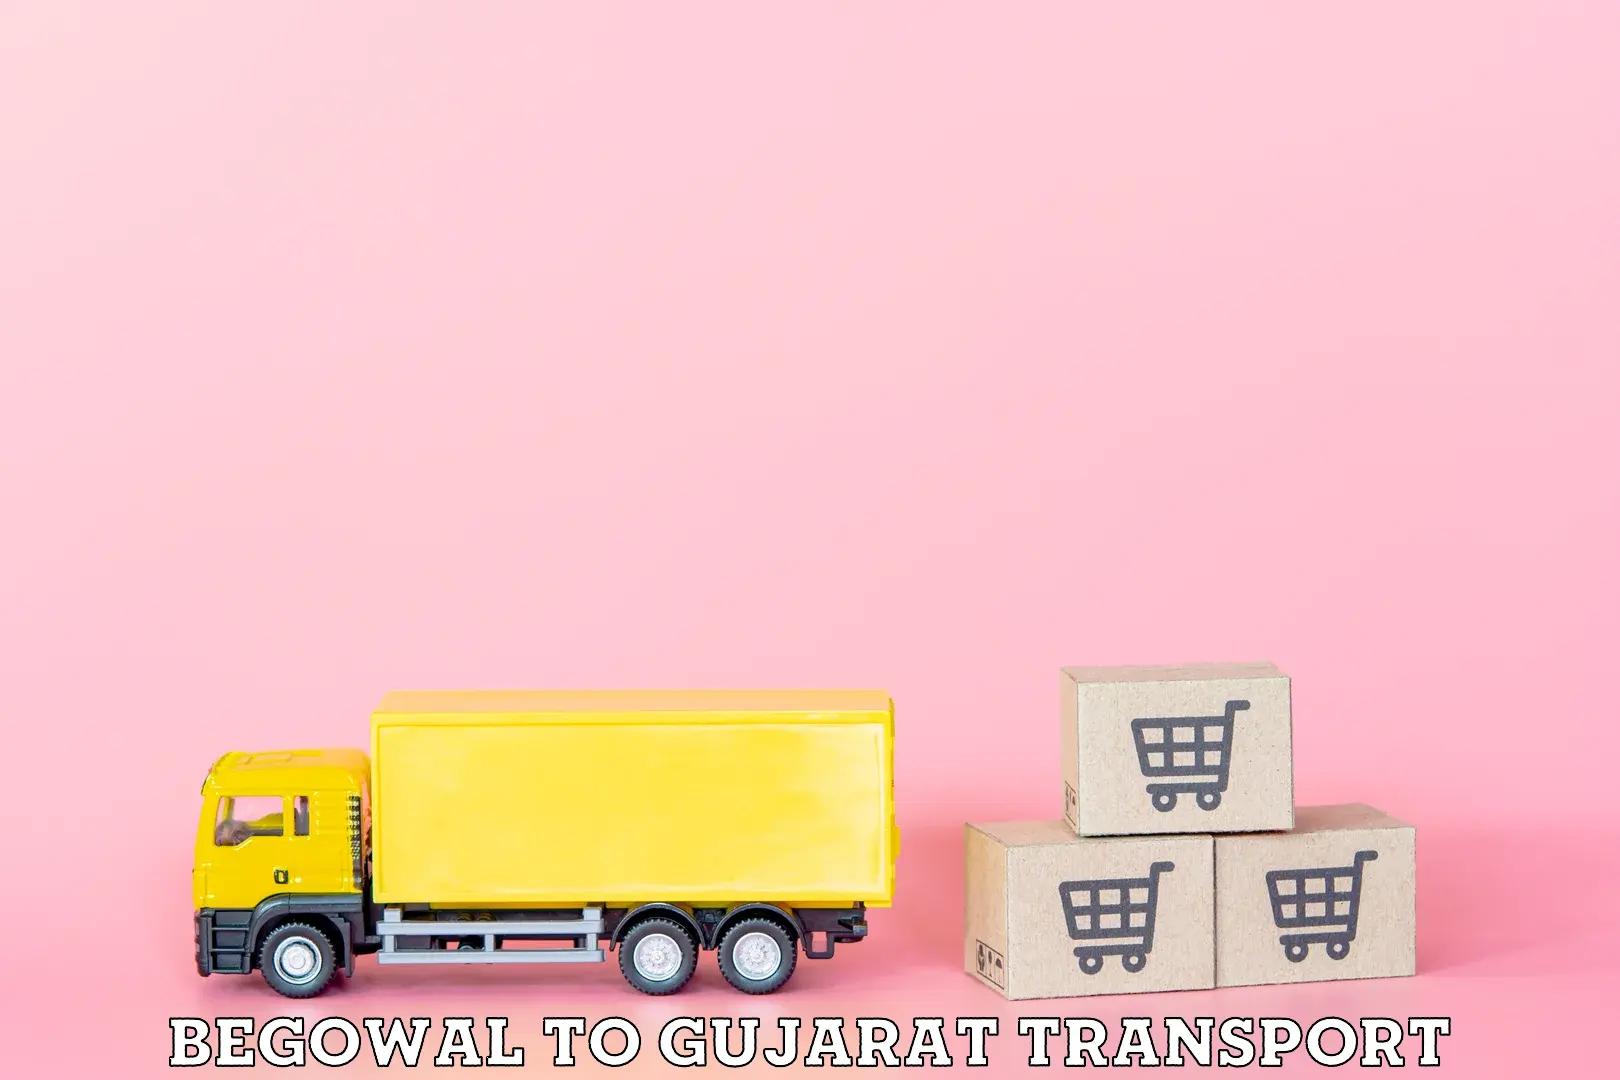 Container transport service Begowal to IIIT Vadodara